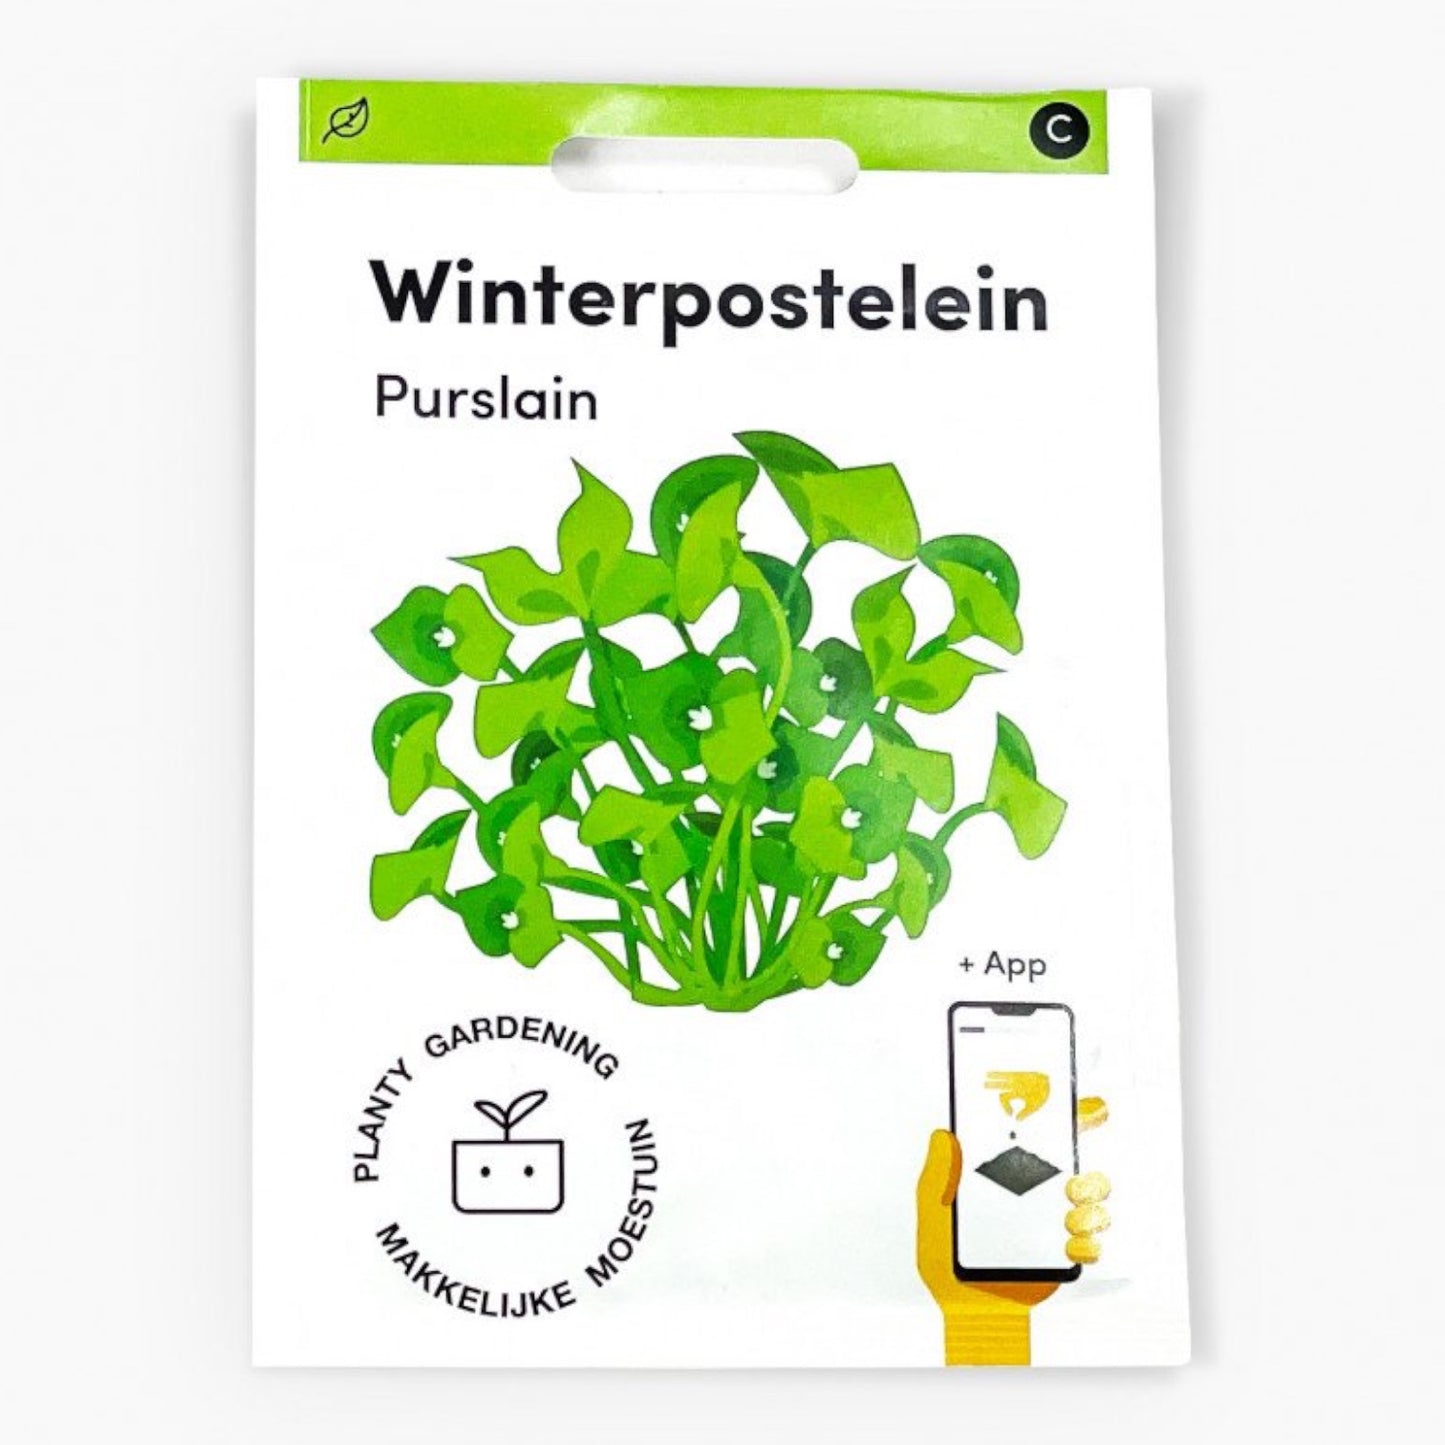 Winterpostelein